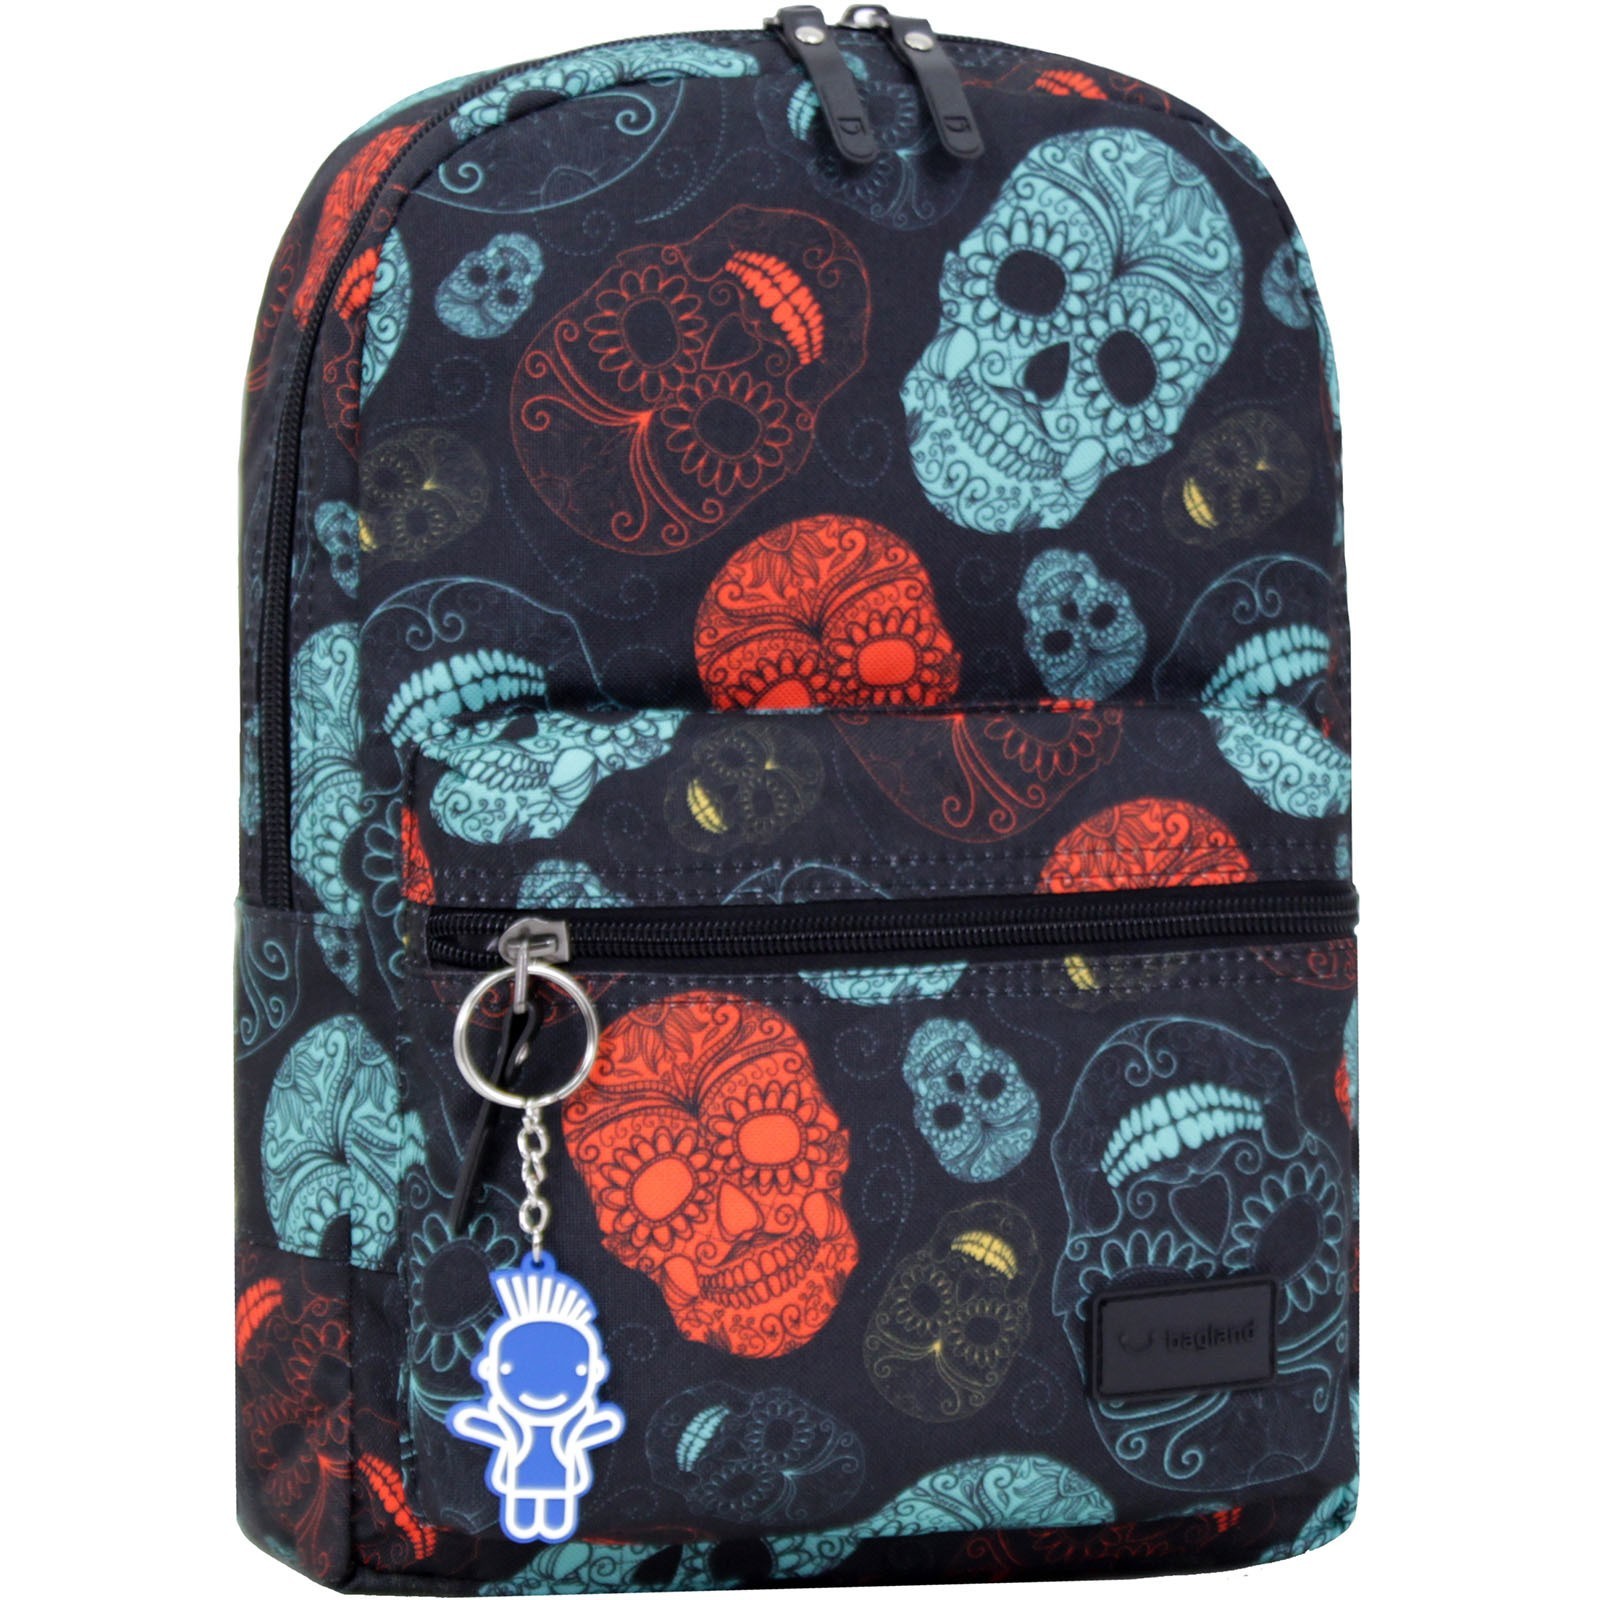 

Рюкзак молодежный с мягкой спинкой ранец для мальчика и девочки Mini 8 л. 32 x 23 x 10 см Разноцветный BL (00508664)